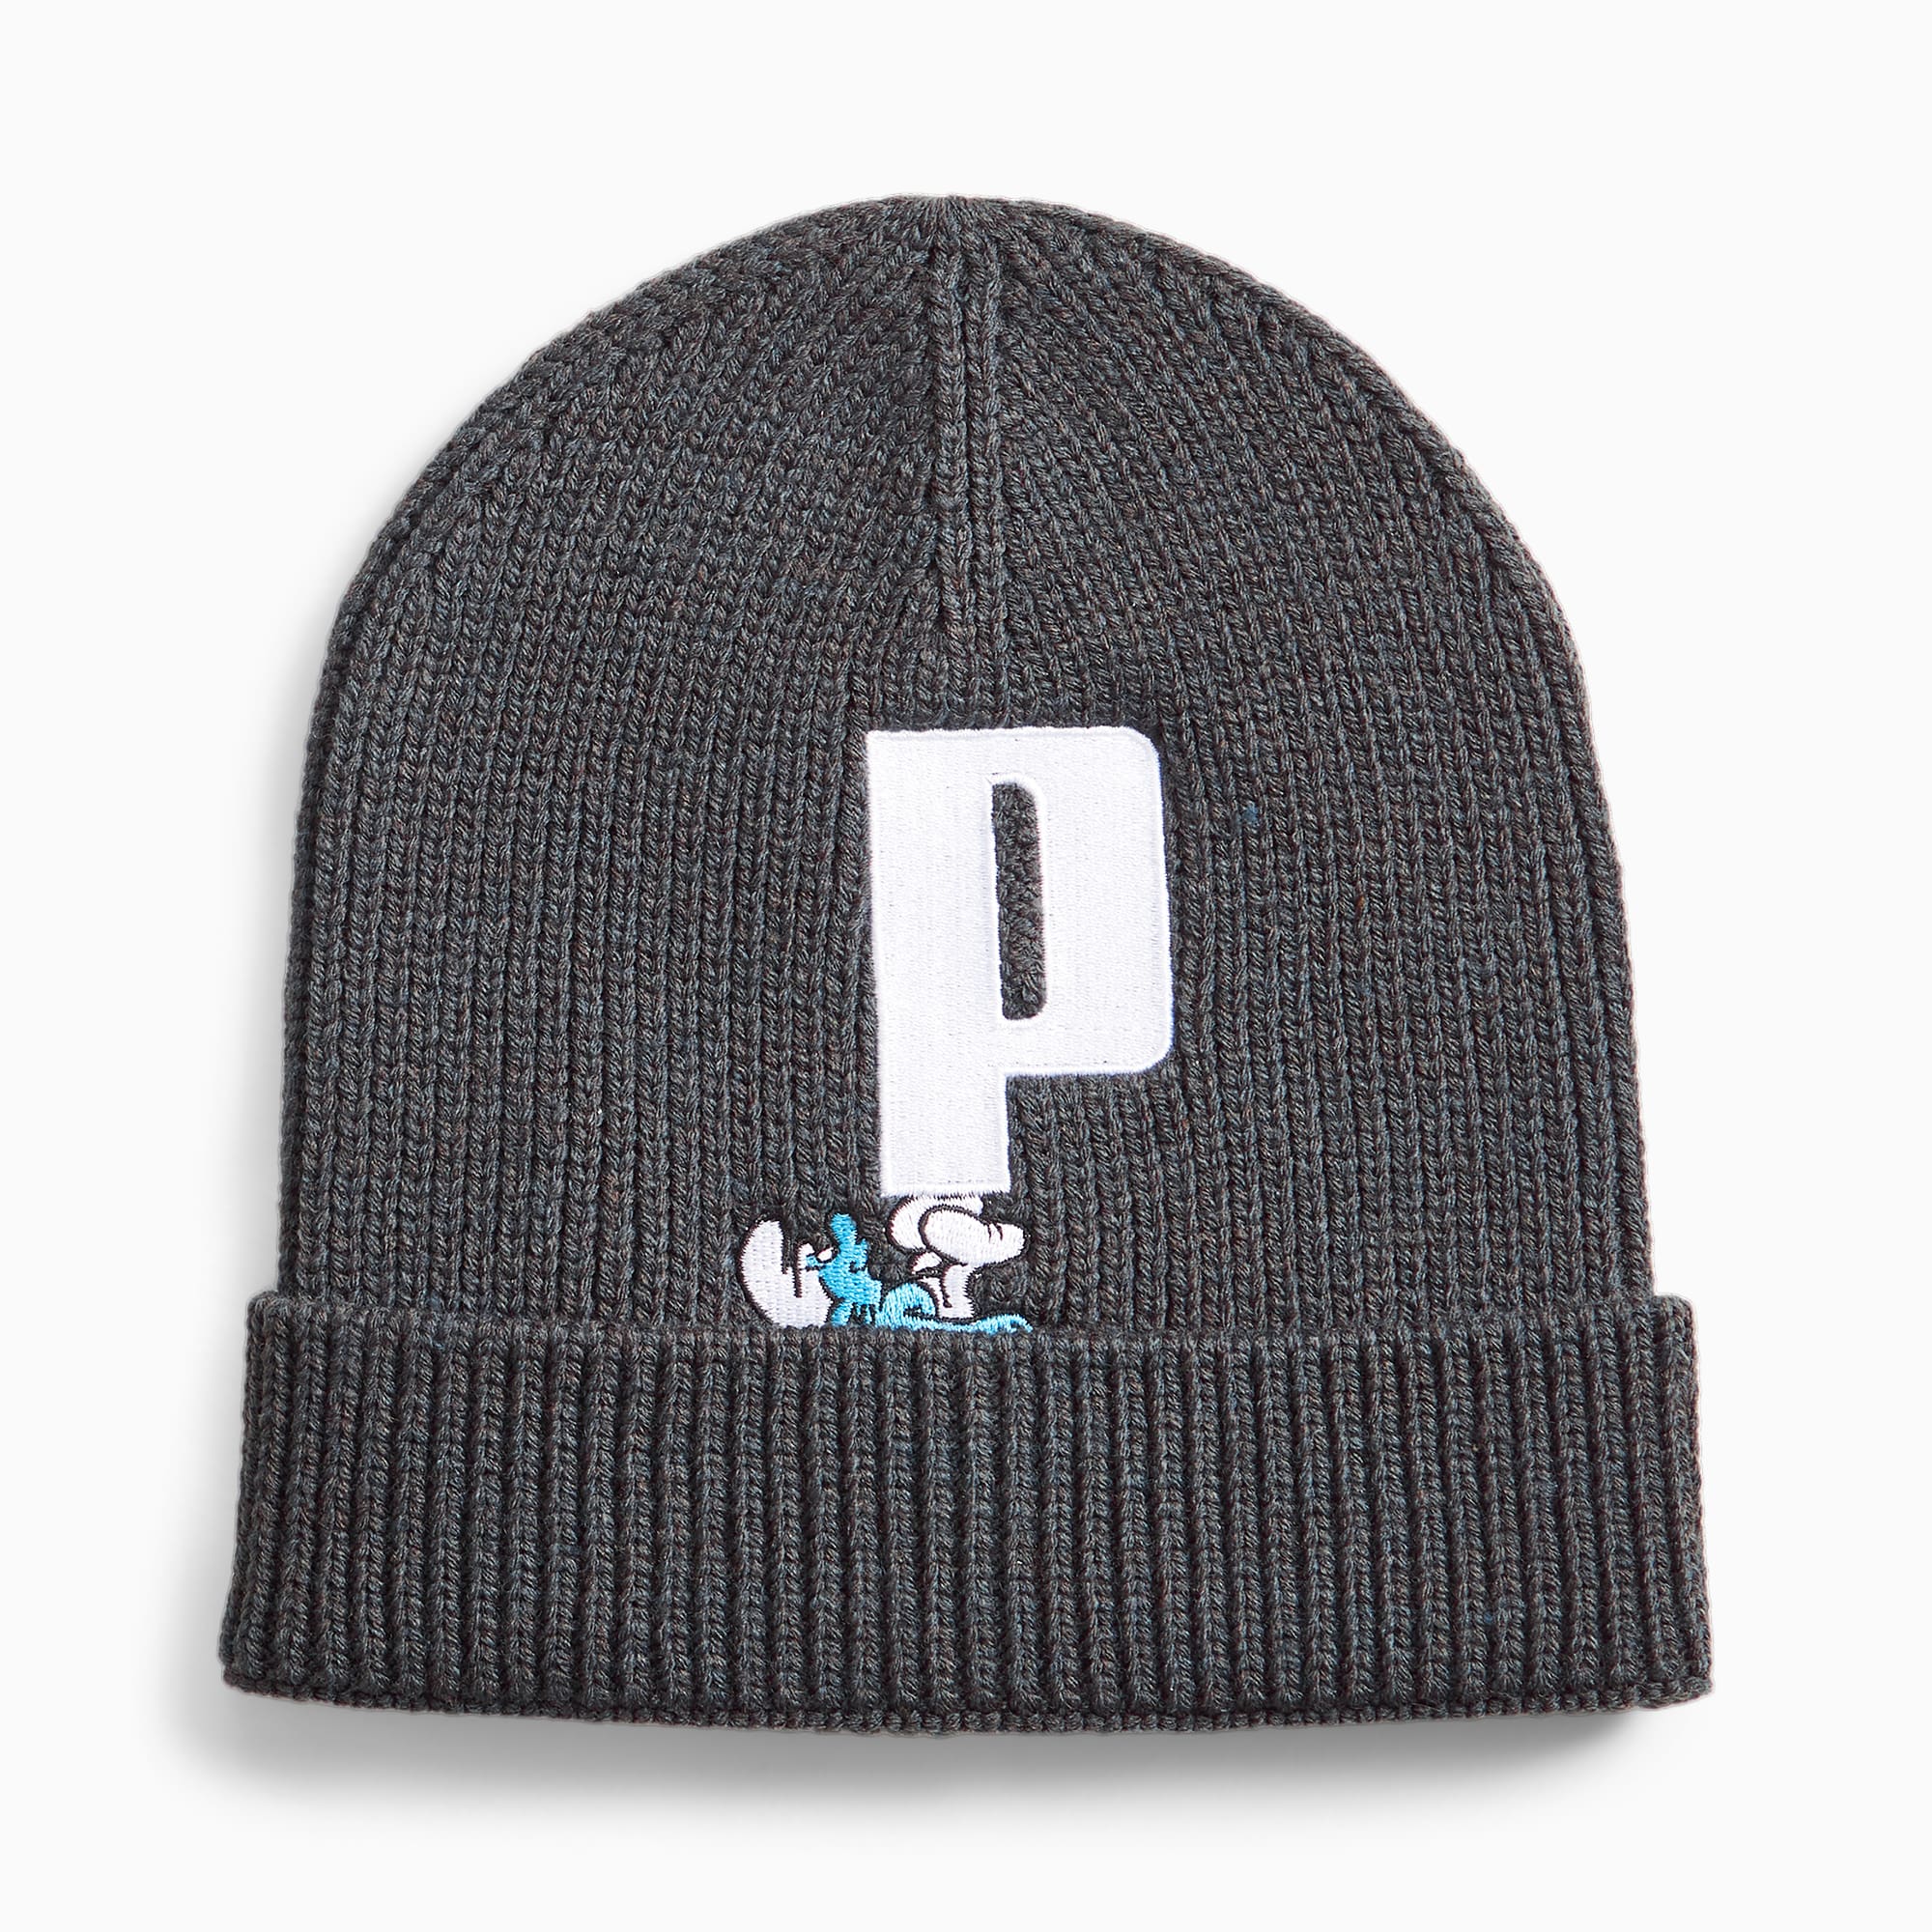 Cappello Puma P - Abbigliamento